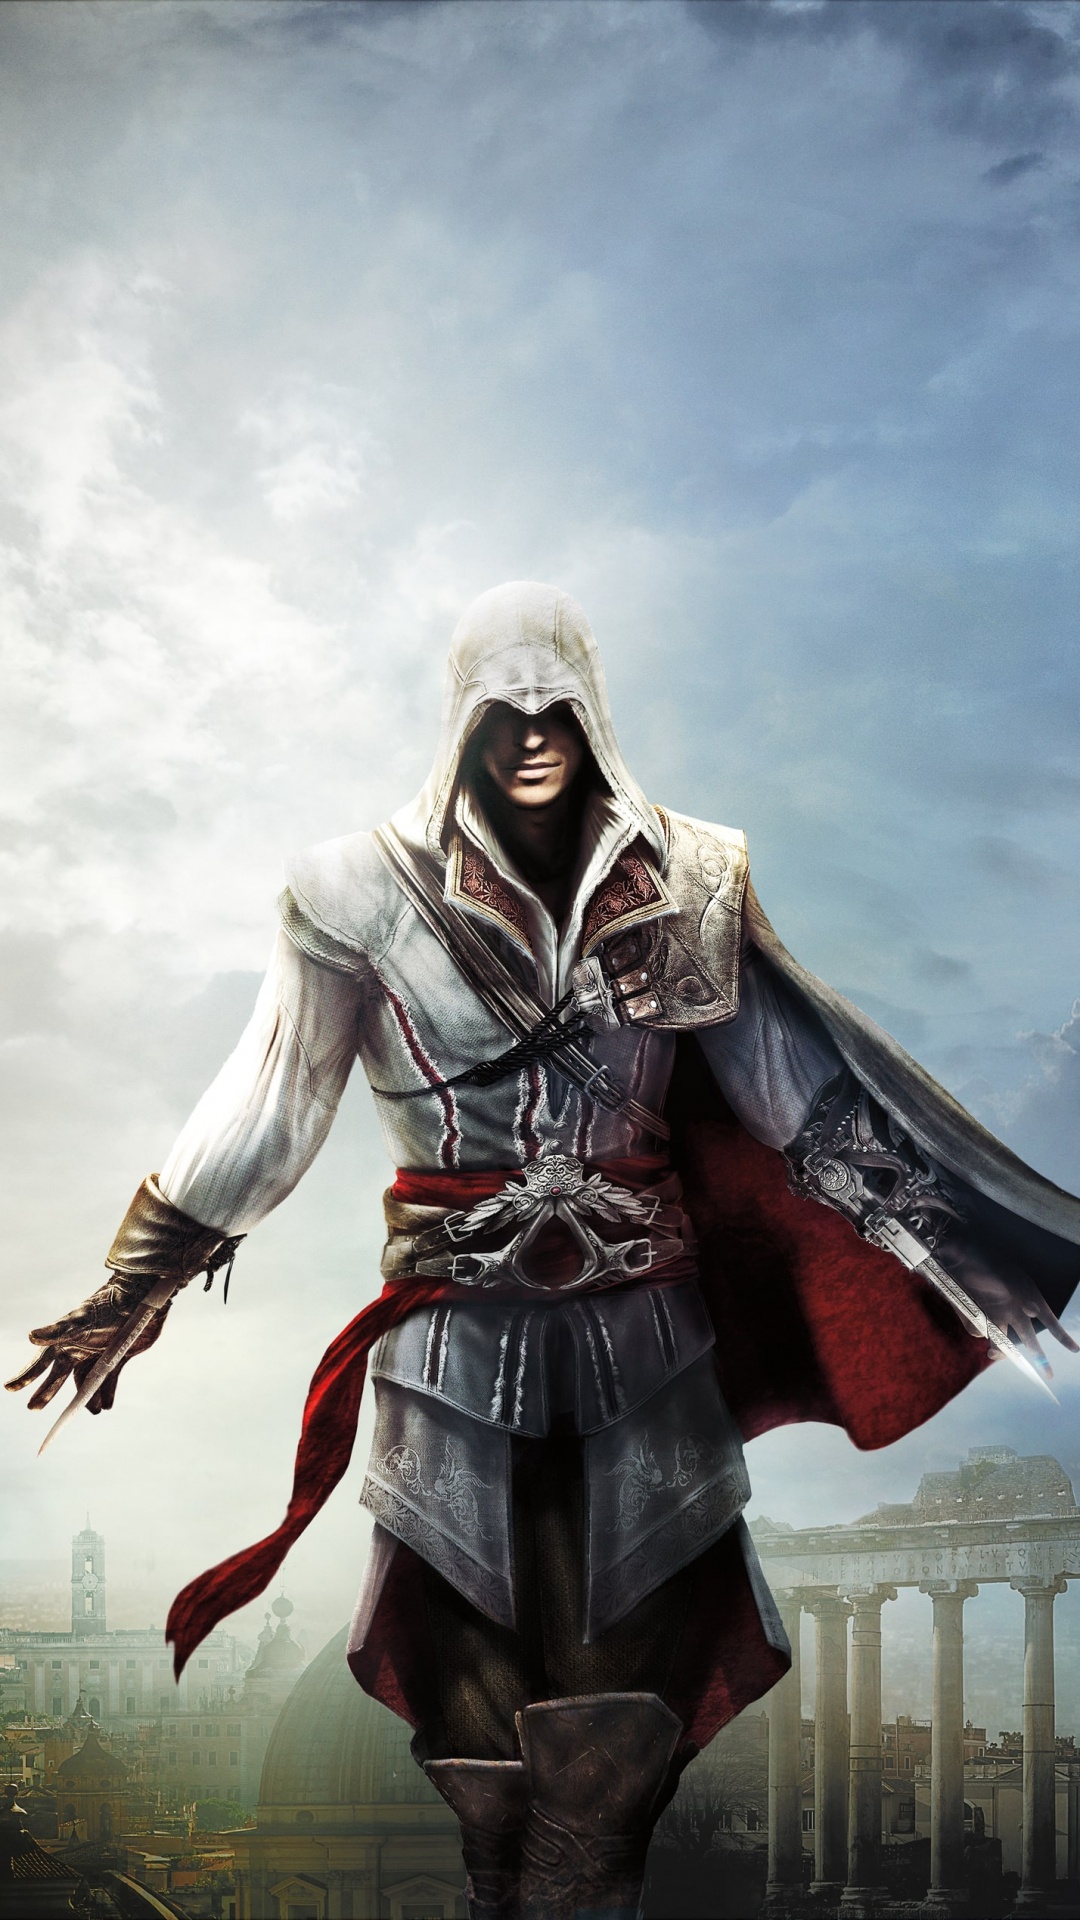 Ezio Auditore, Les Jeux Vidéo, Assassins Creed Revelations, Ciel, Assassins Creed Ezio Trilogy. Wallpaper in 1080x1920 Resolution